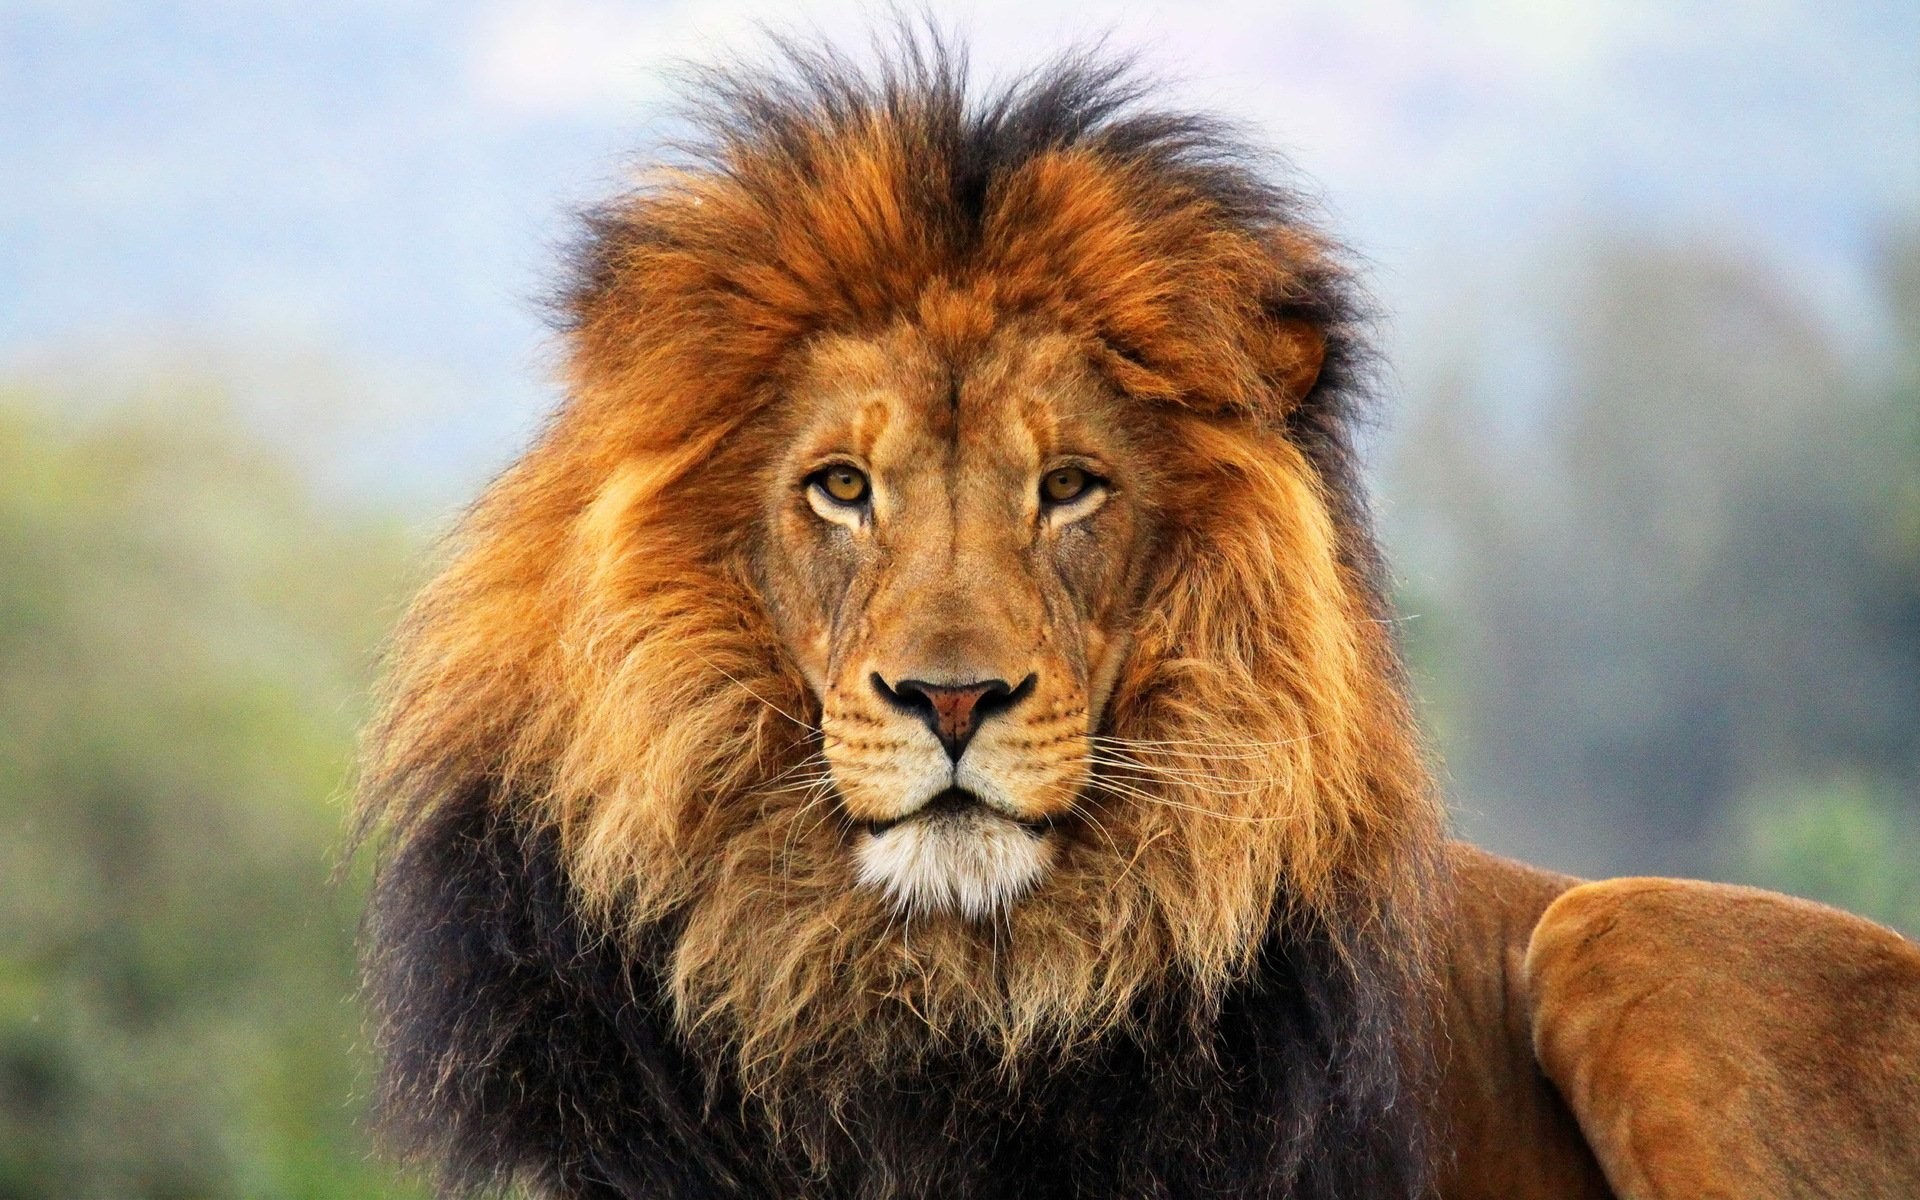 Lion Wallpaper Desktop (64+ pictures)